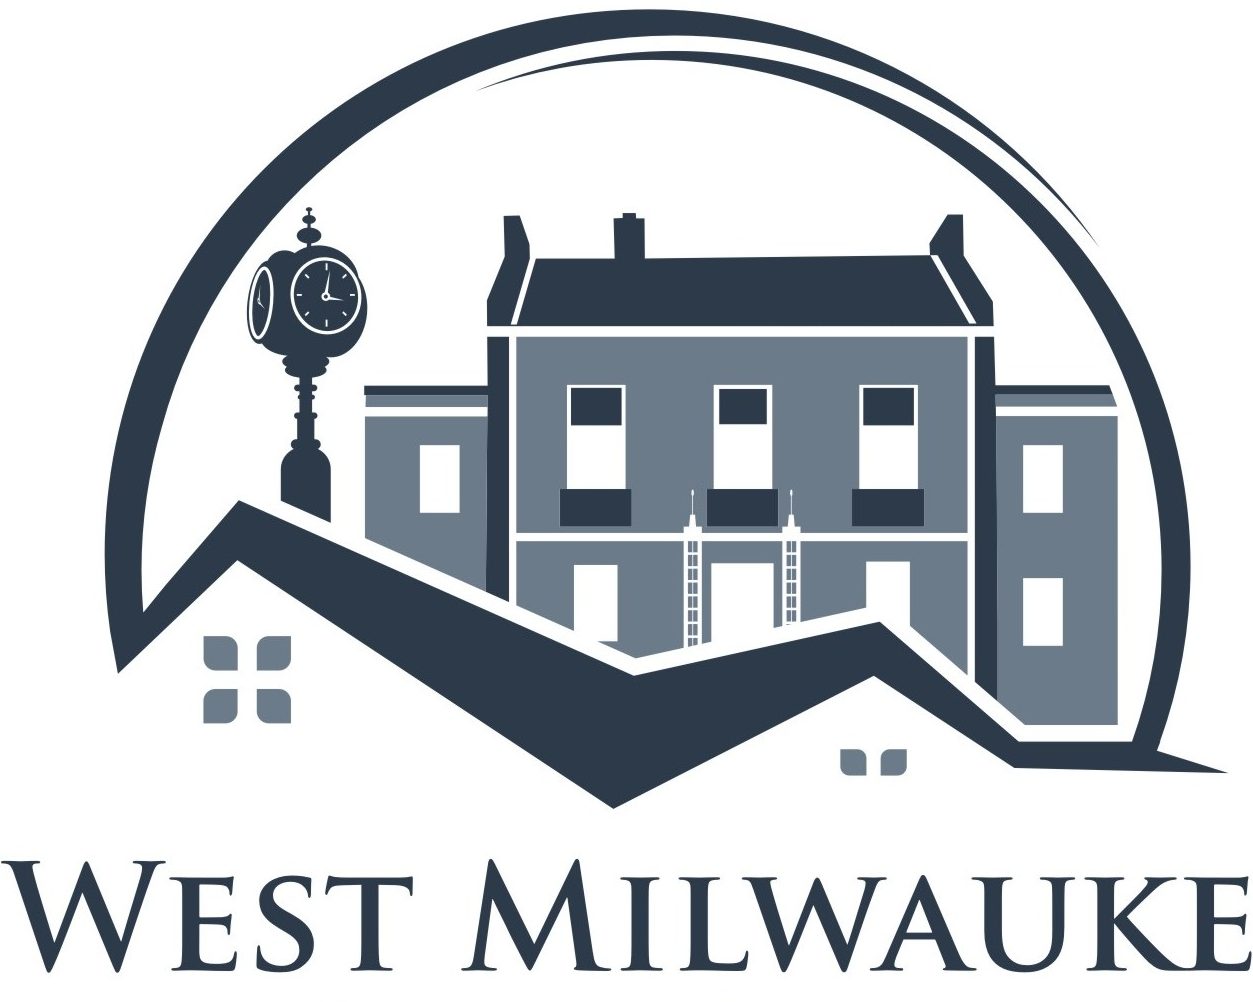 Village of West Milwaukee